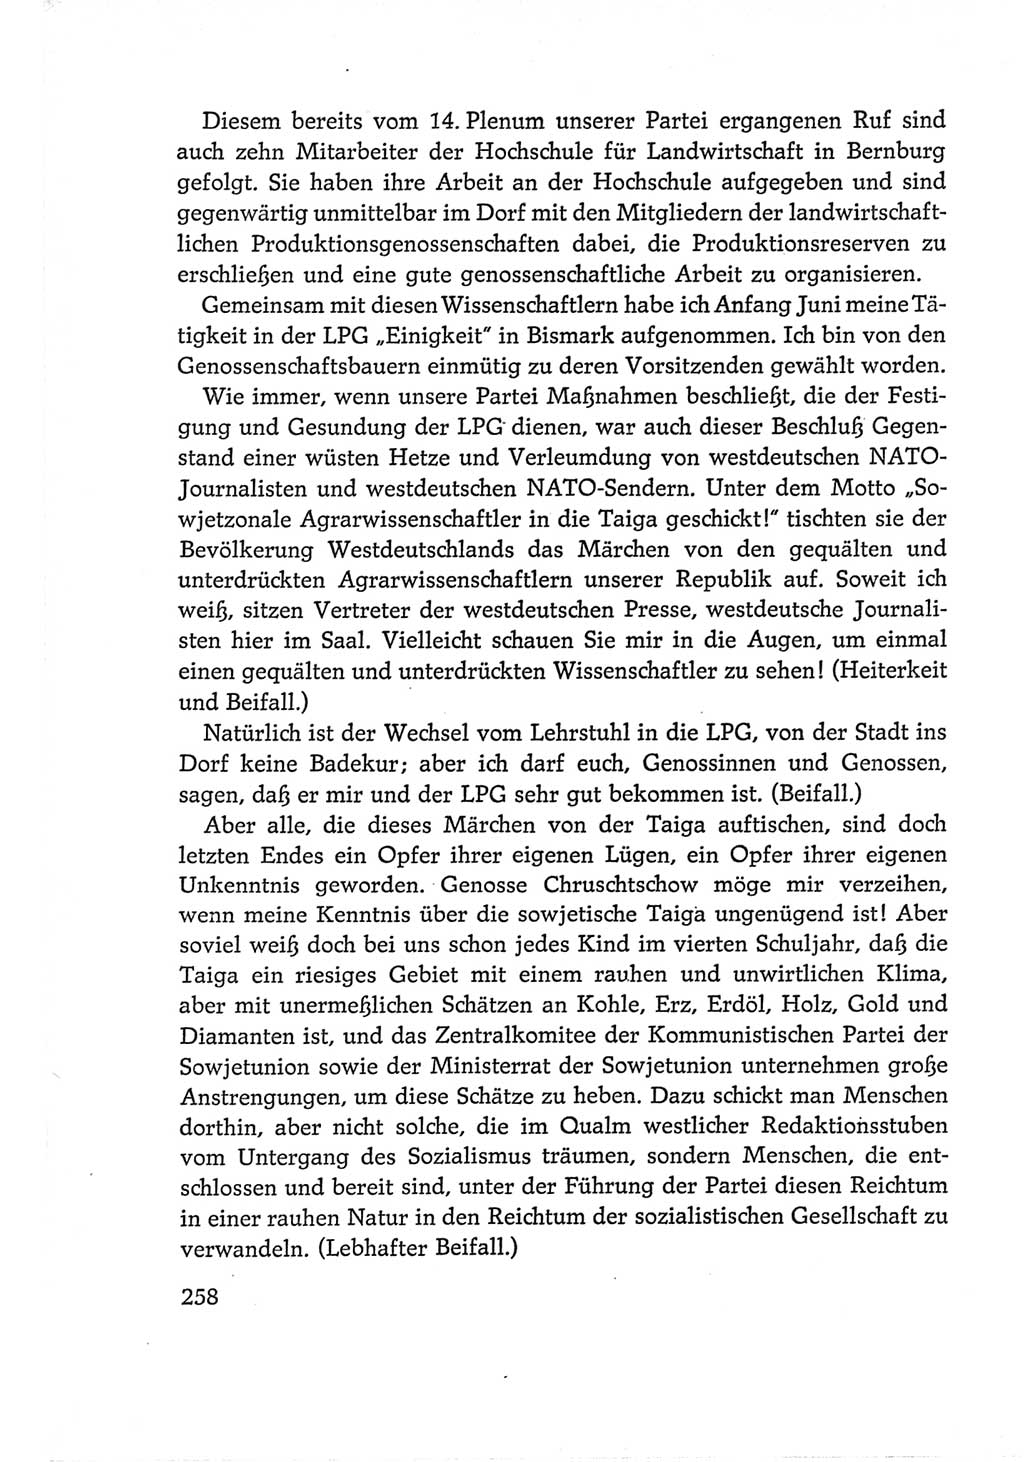 Protokoll der Verhandlungen des Ⅵ. Parteitages der Sozialistischen Einheitspartei Deutschlands (SED) [Deutsche Demokratische Republik (DDR)] 1963, Band Ⅰ, Seite 258 (Prot. Verh. Ⅵ. PT SED DDR 1963, Bd. Ⅰ, S. 258)